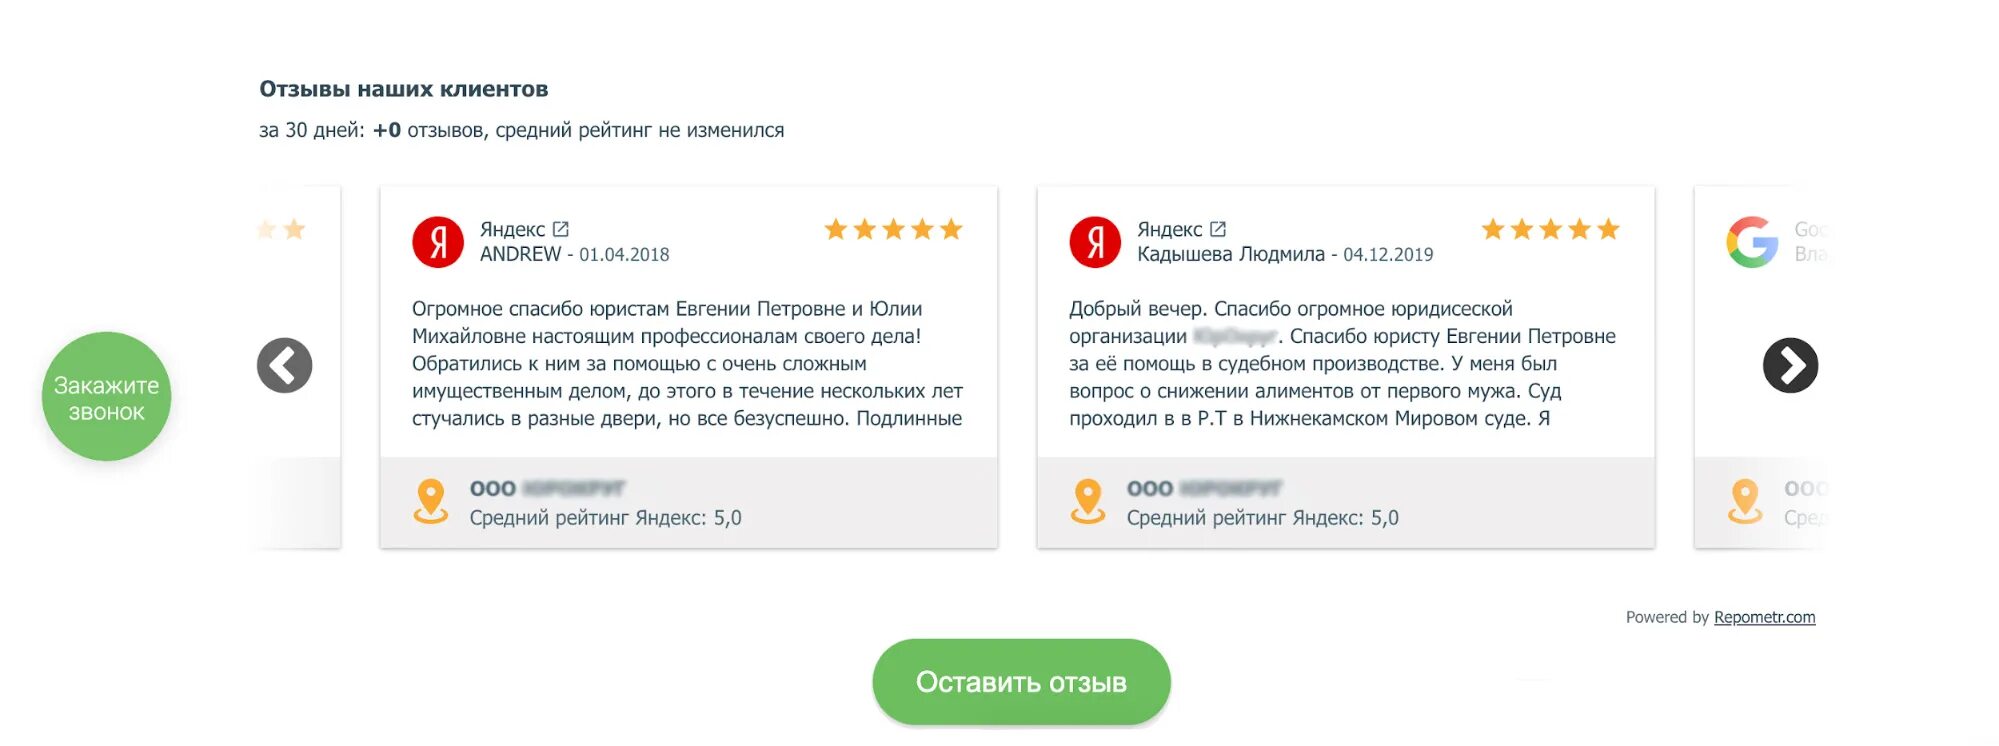 Отзывы. Отзывы на сайте. Виджет отзывы Яндекс карты. Яндекс отзывы. Виджет Яндекс отзывы.